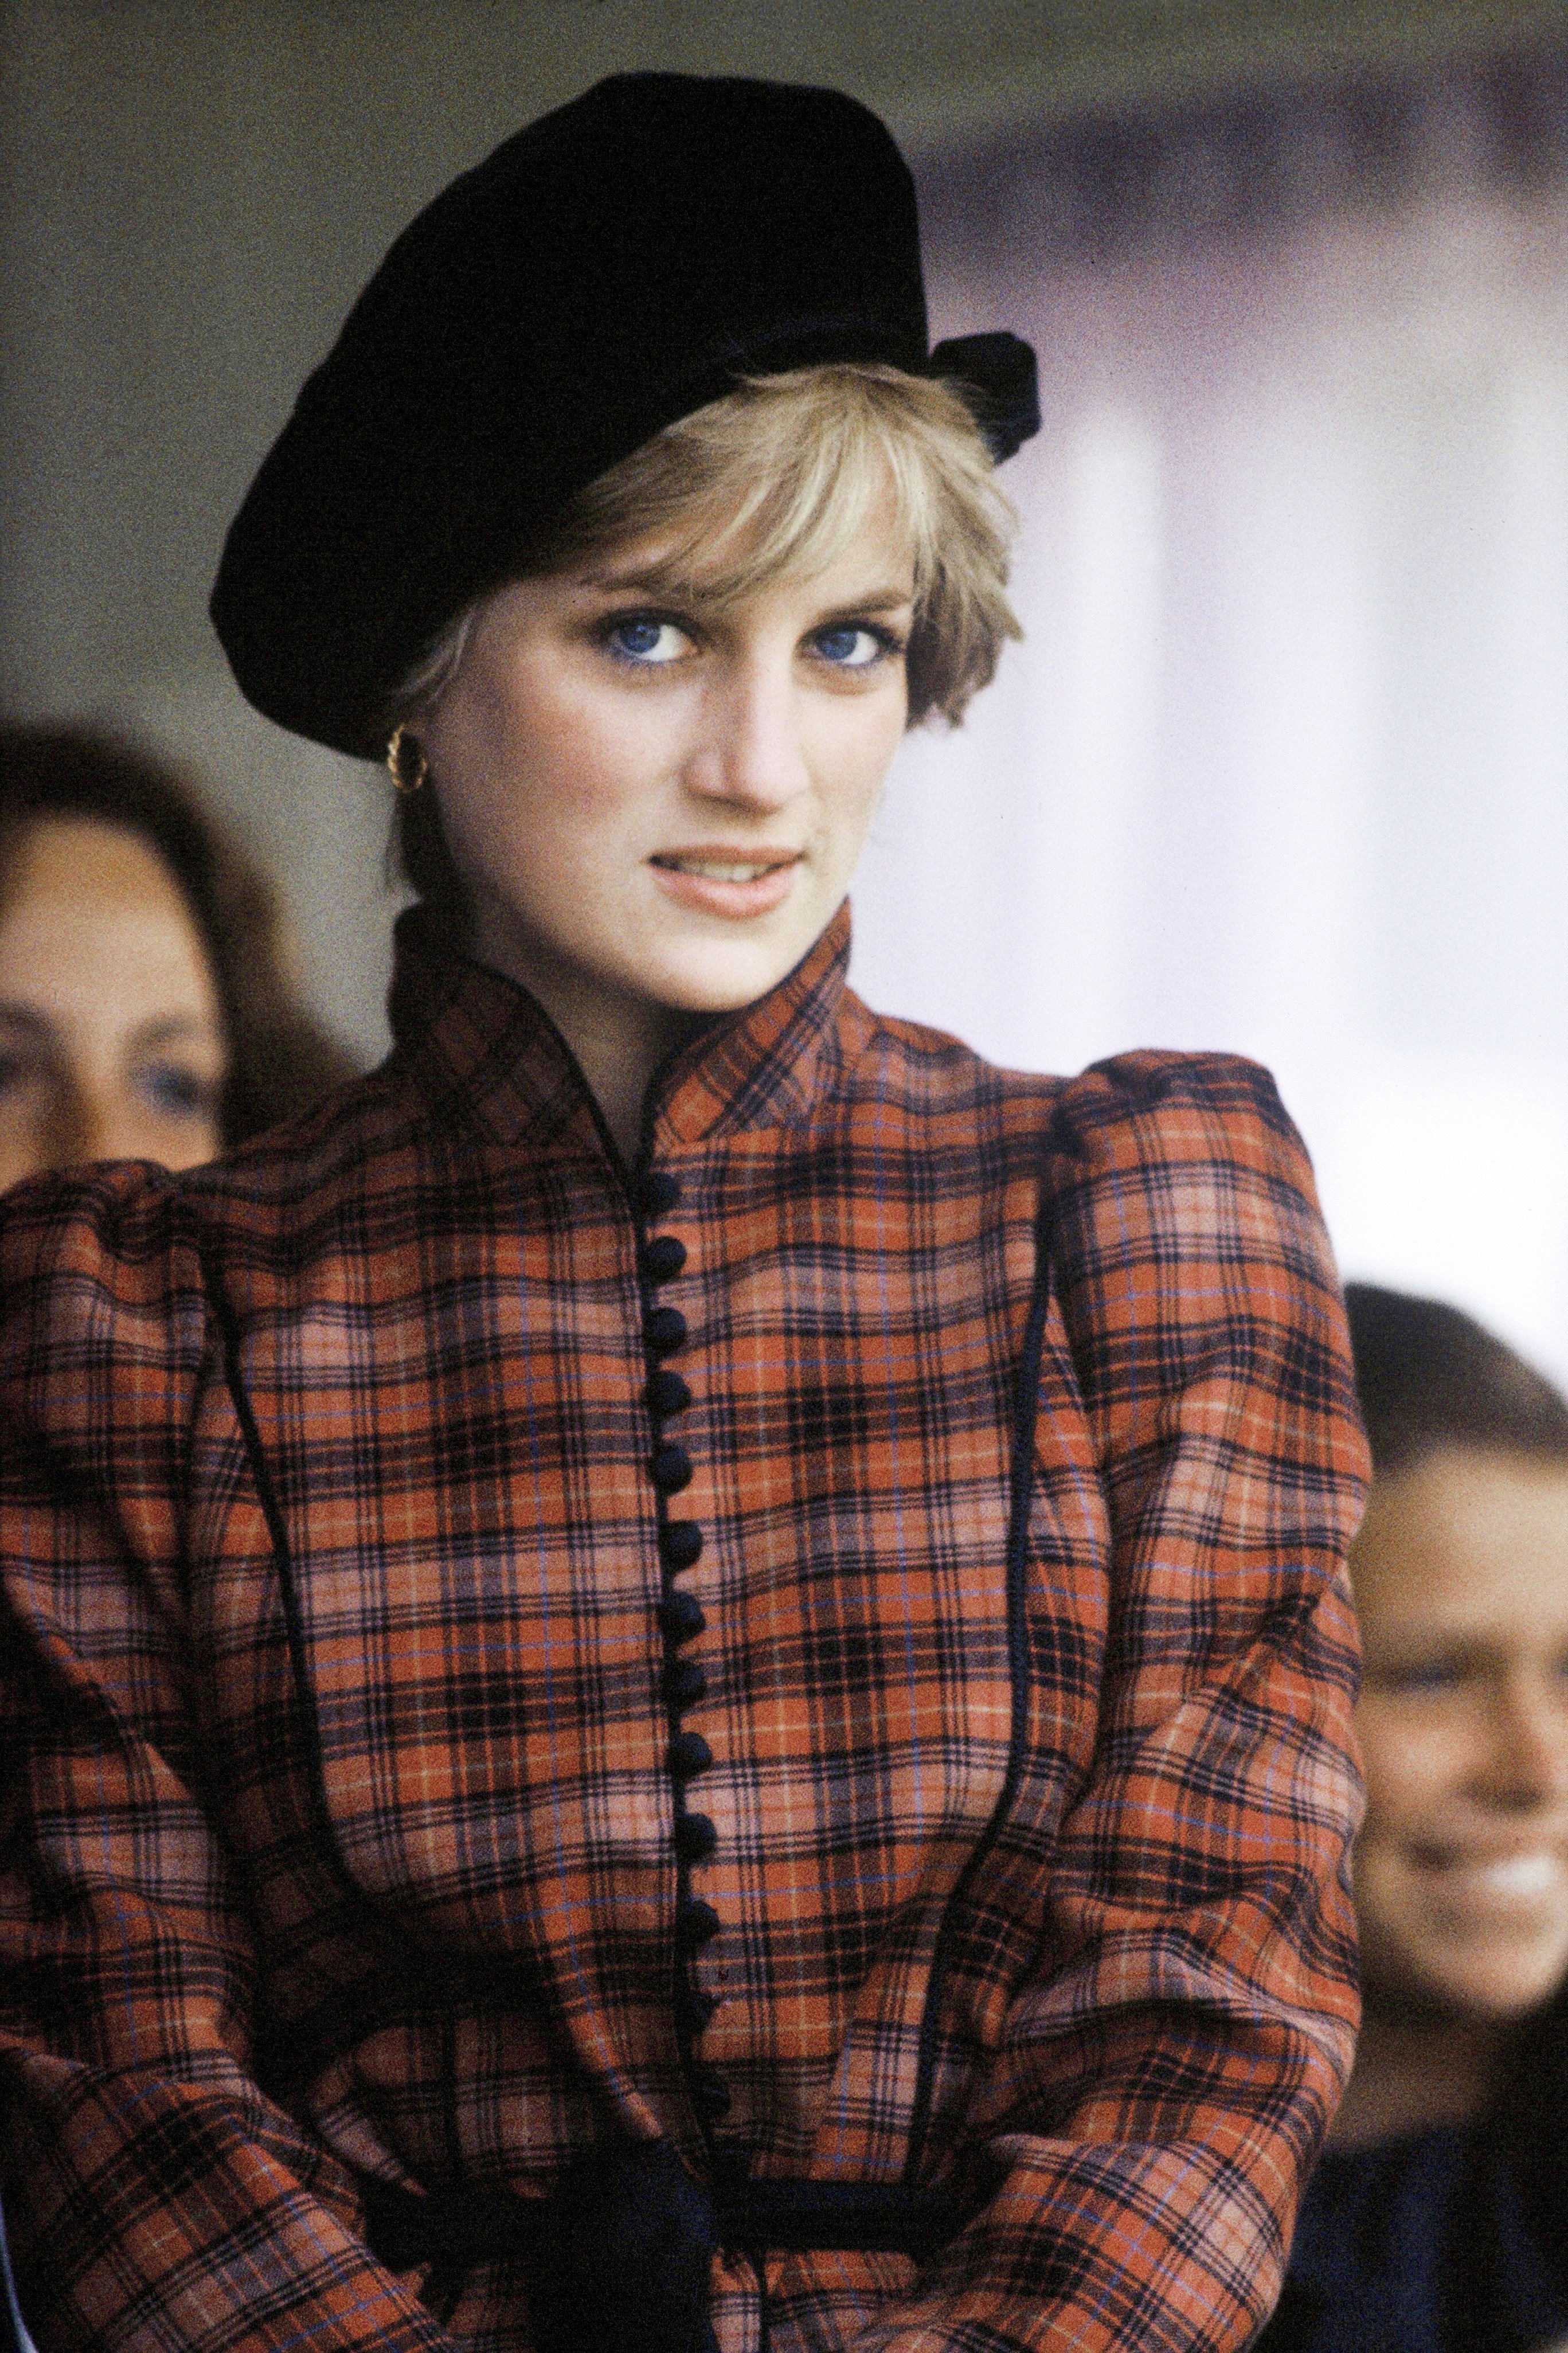 Diana, princesa de Gales, con un vestido de tartán diseñado por Caroline Charles y un sombrero negro estilo Tam o' shanter, asiste a los Braemar Highland Games el 5 de septiembre de 1981, en Braemar, Escocia. | Foto: Getty Images